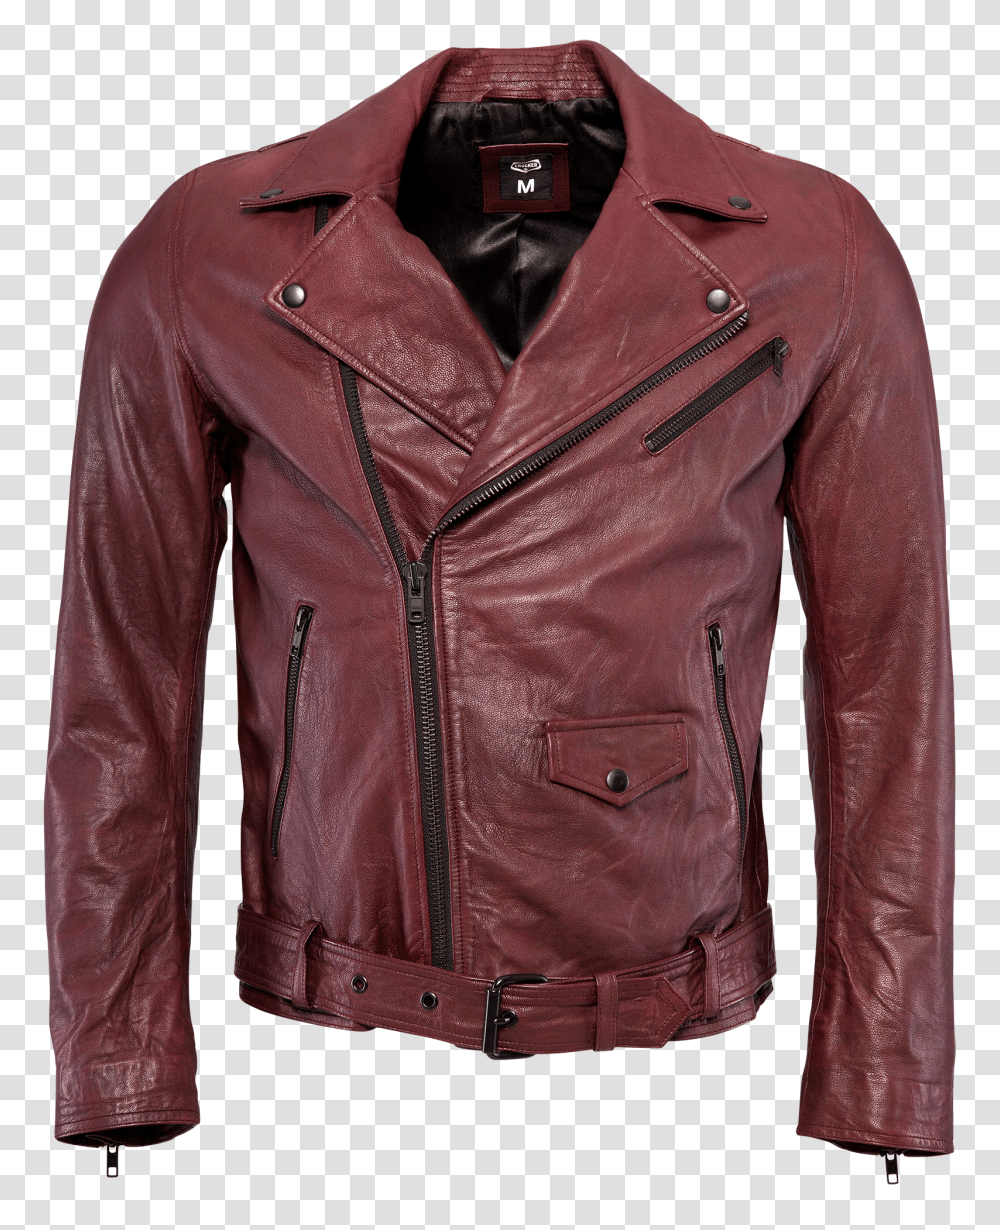 CR Jack Leather Jacket Oxblood Transparent Png